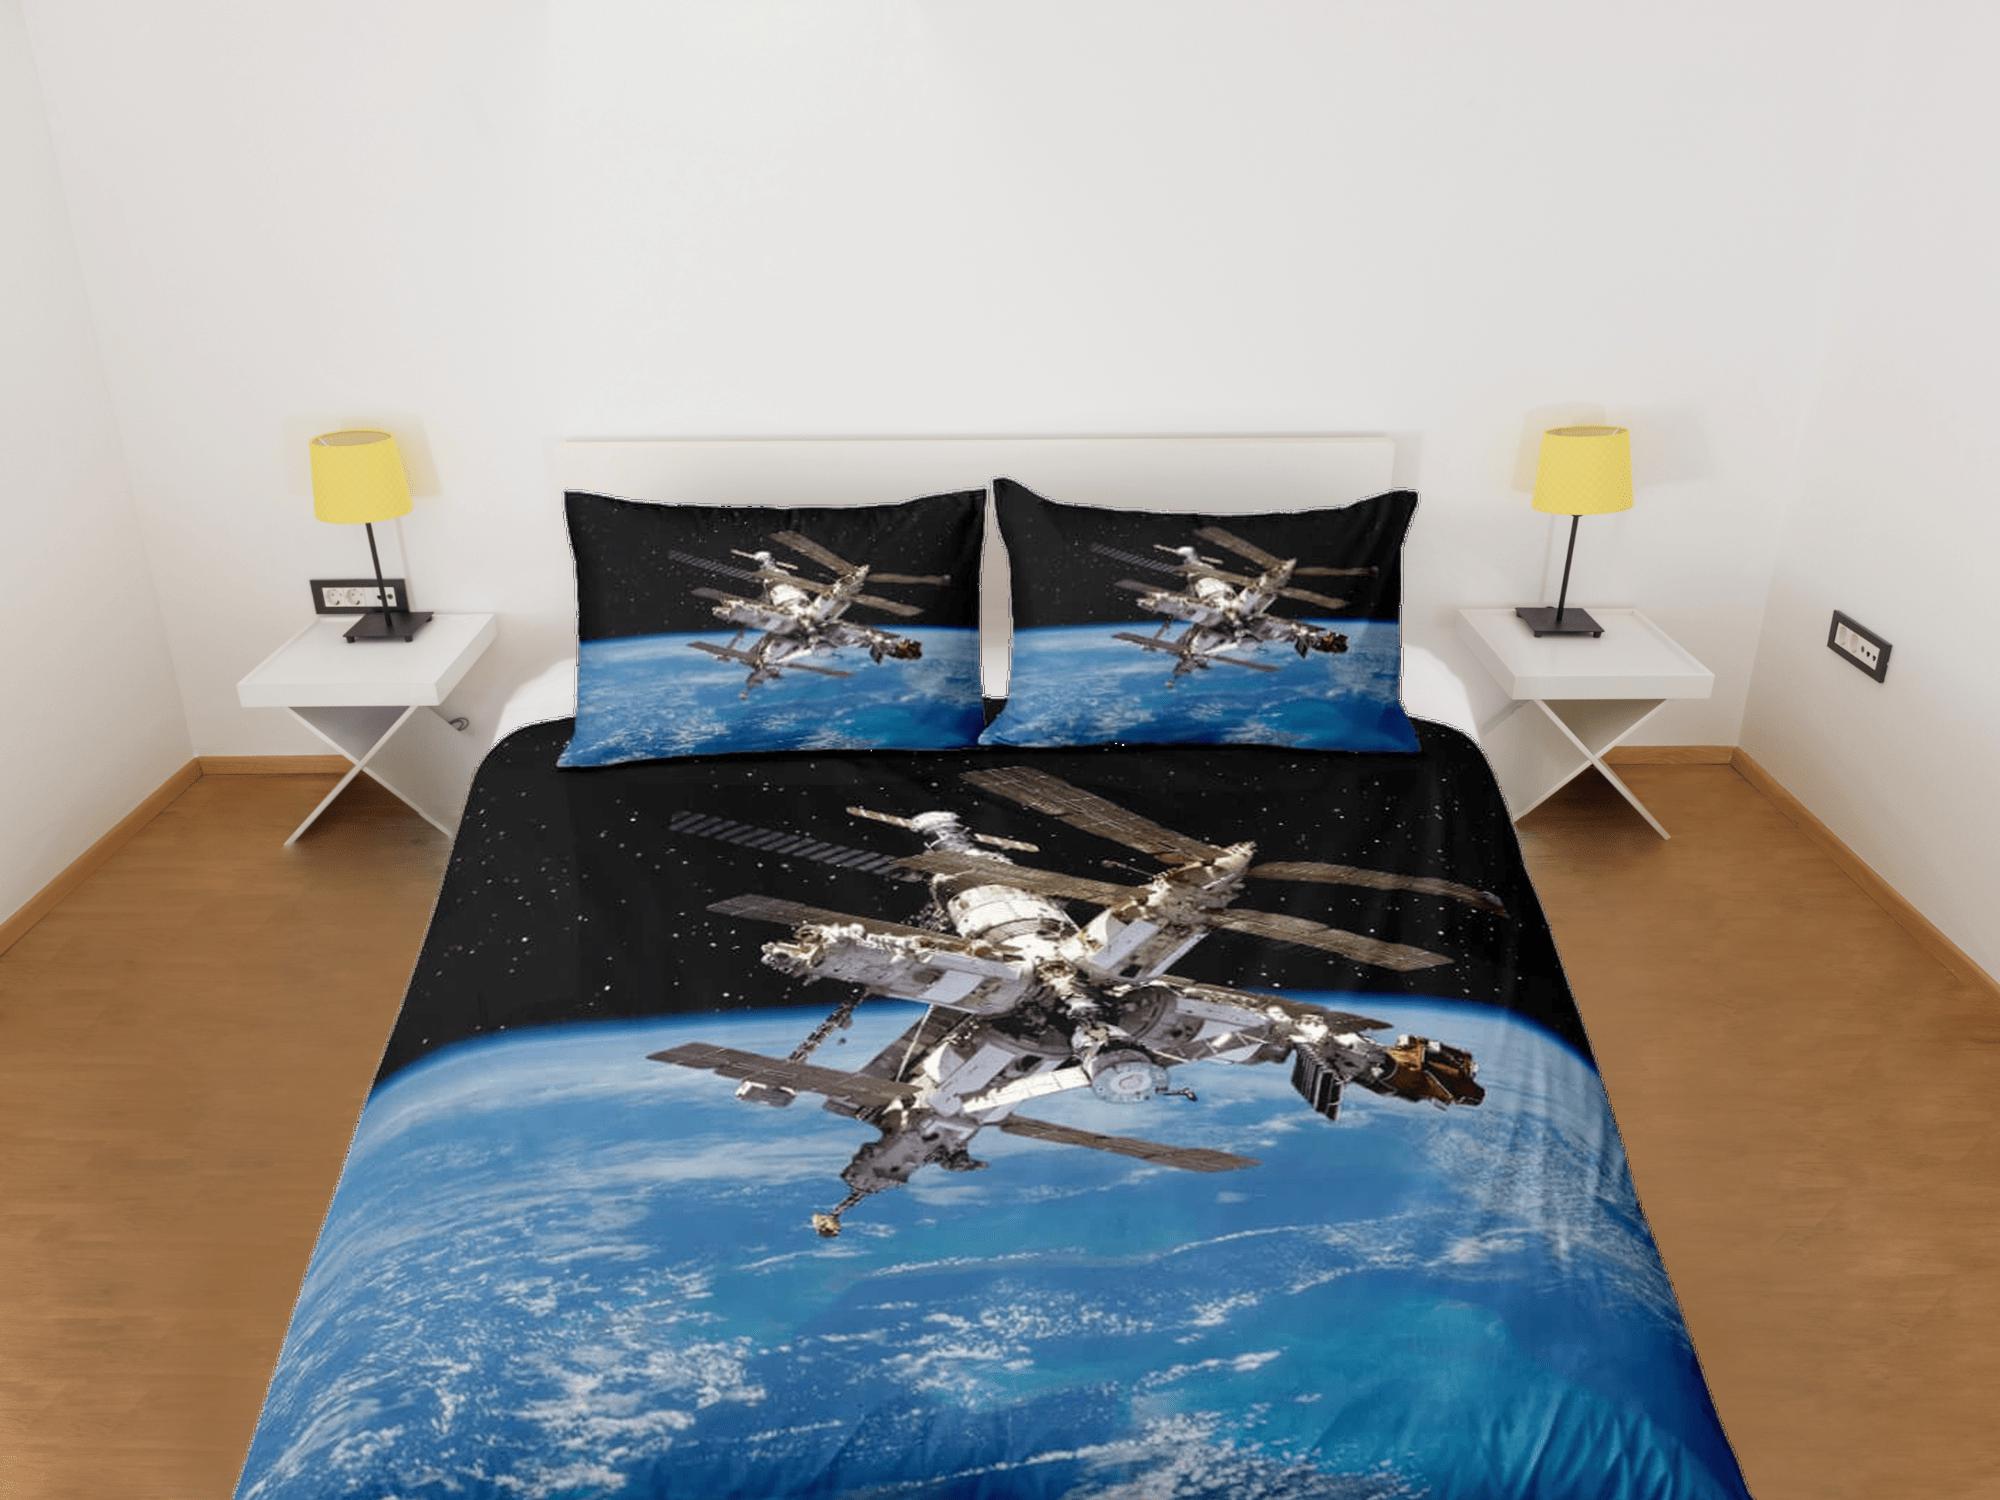 daintyduvet 3D satellite outer space bedding, galaxy bedding set full, cosmic duvet cover king, queen, dorm bedding, toddler bedding aesthetic duvet